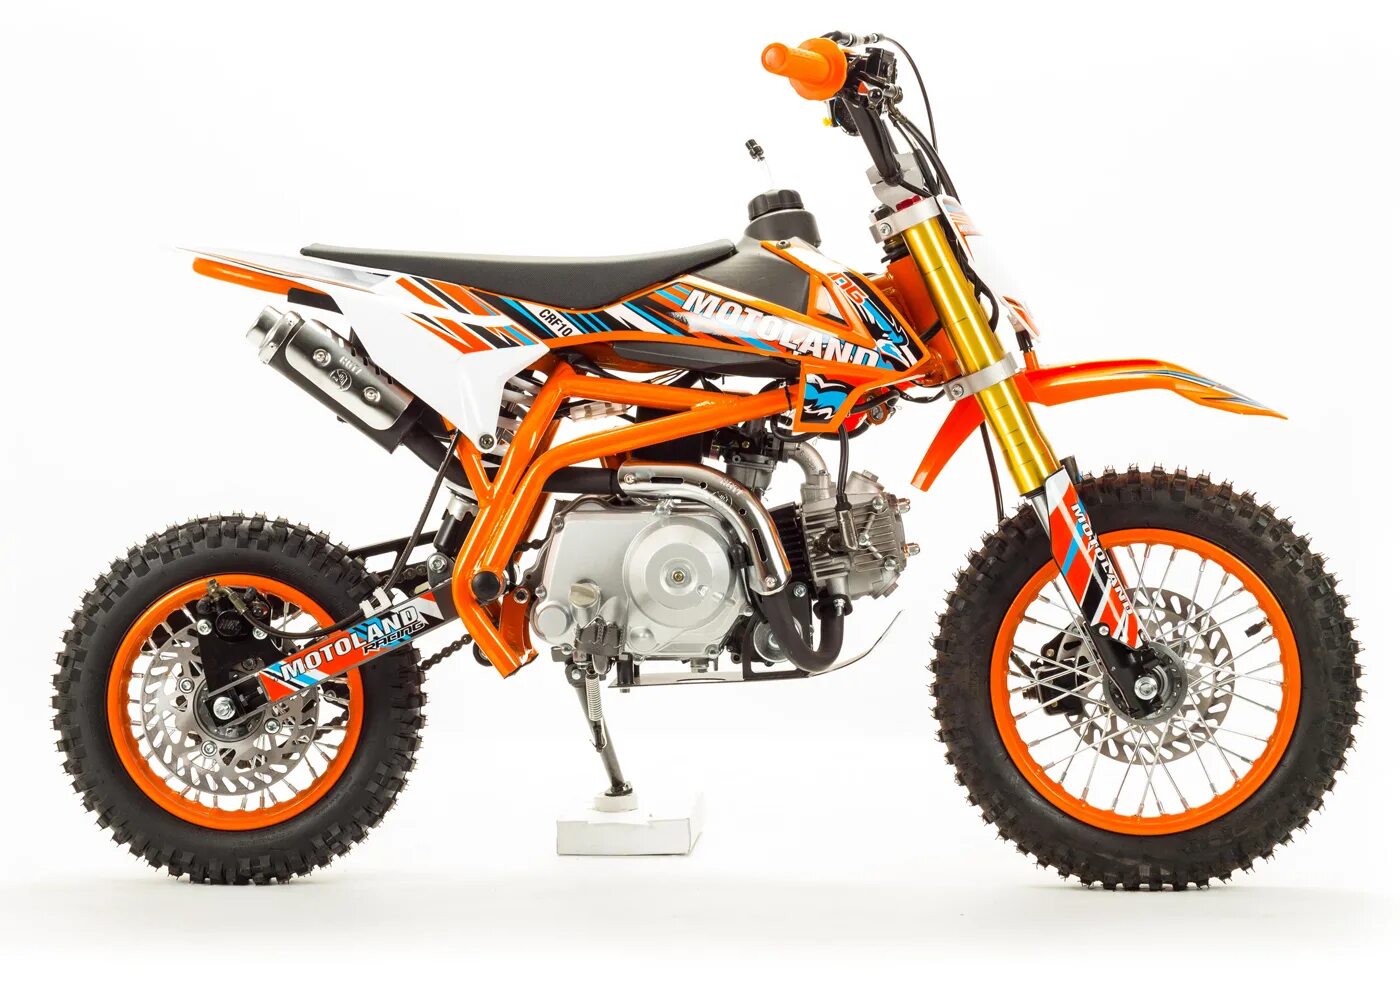 Питбайк Motoland CRF 10. Мотоцикл кросс 70 crf10. Мотоцикл Motoland кросс CRF 10 цвет оранжевый. Мотоцикл кросс 70 crf10 (2020 г.). Питбайк для детей 12 лет